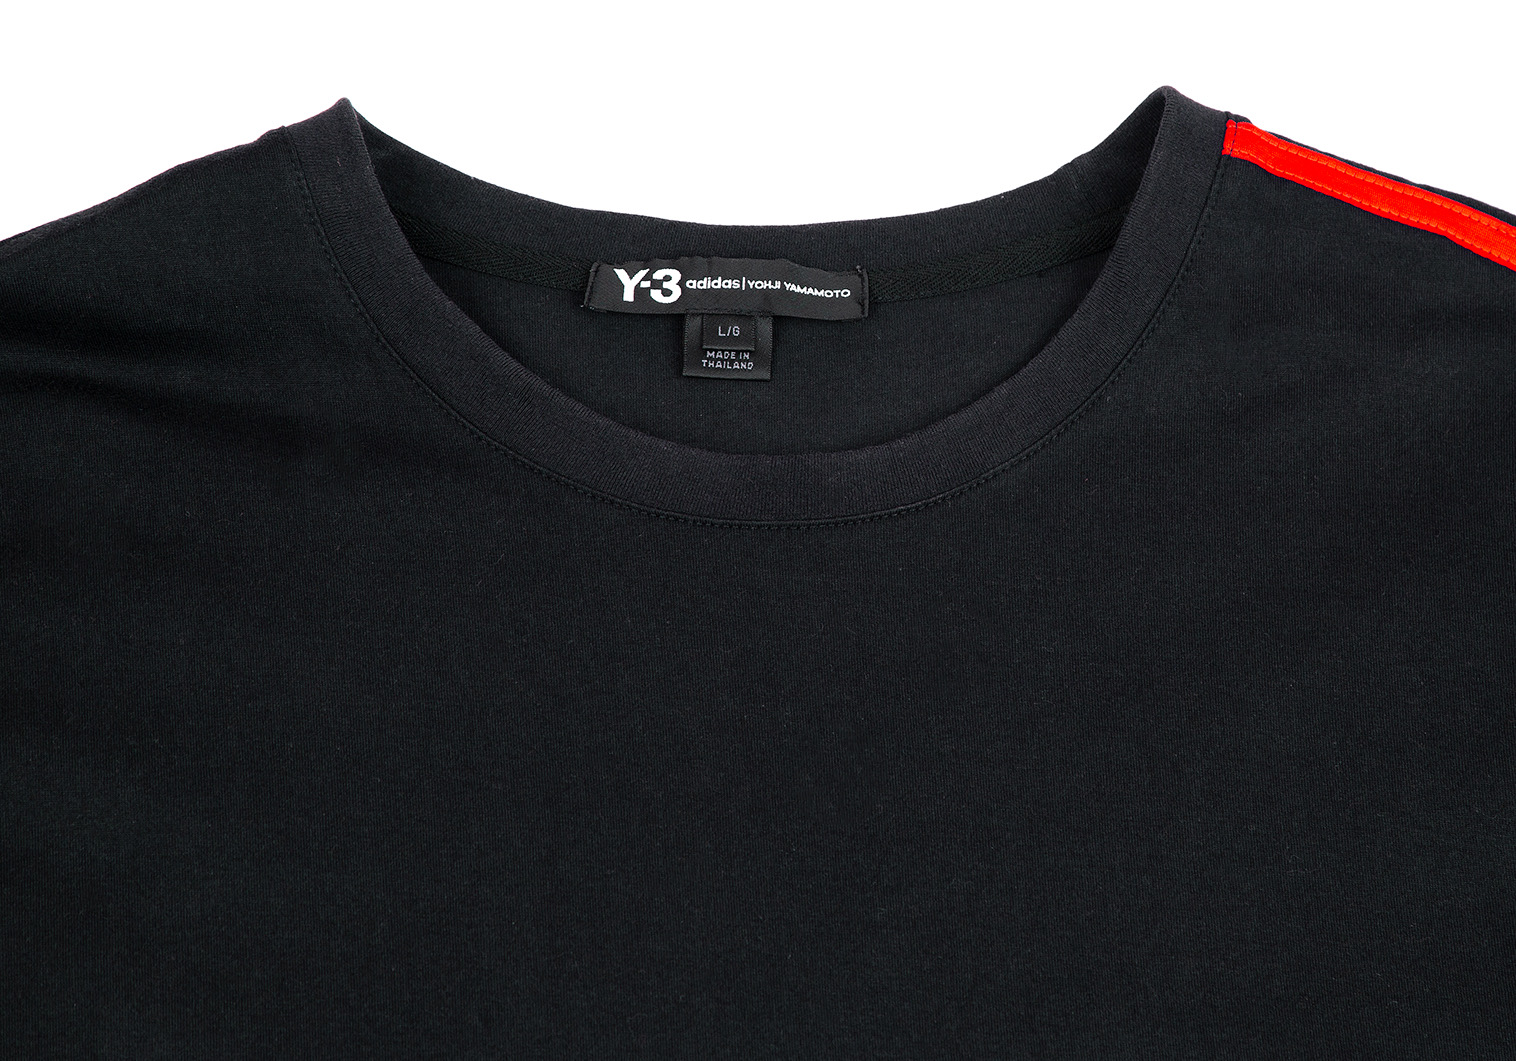 ワイスリーY-3 スリーストライプTシャツ 黒赤L